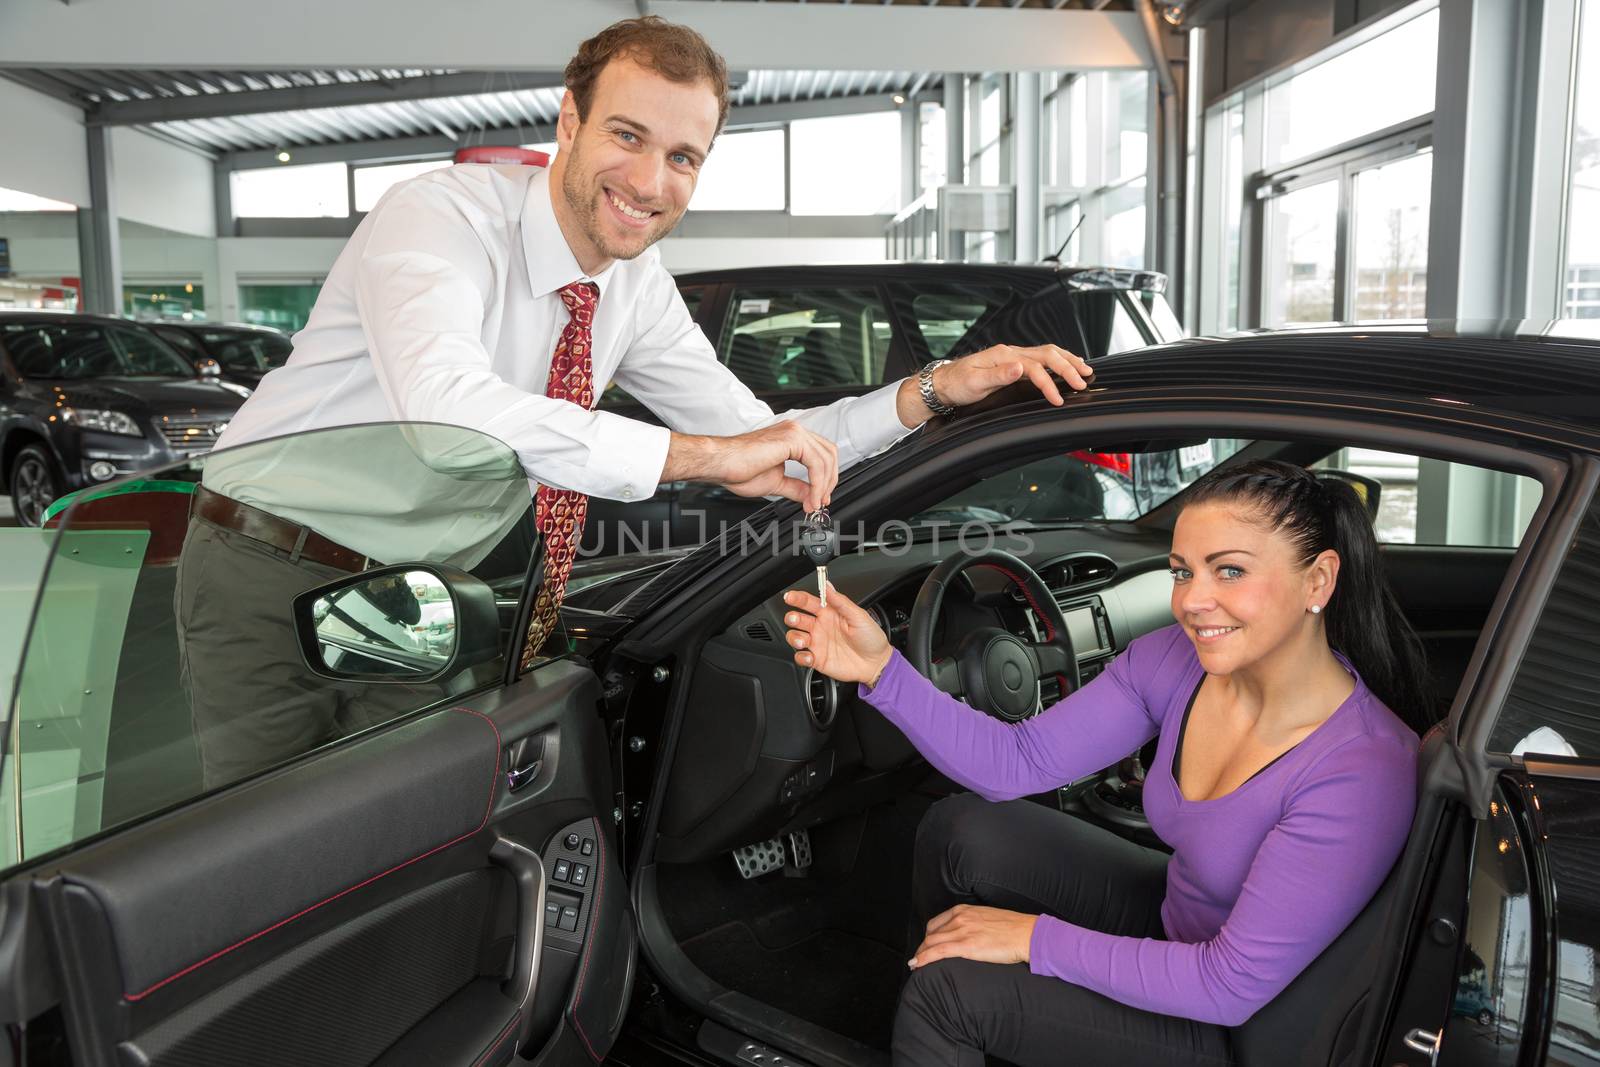 Salesman in car dealership sells automobile to customer by ikonoklast_fotografie